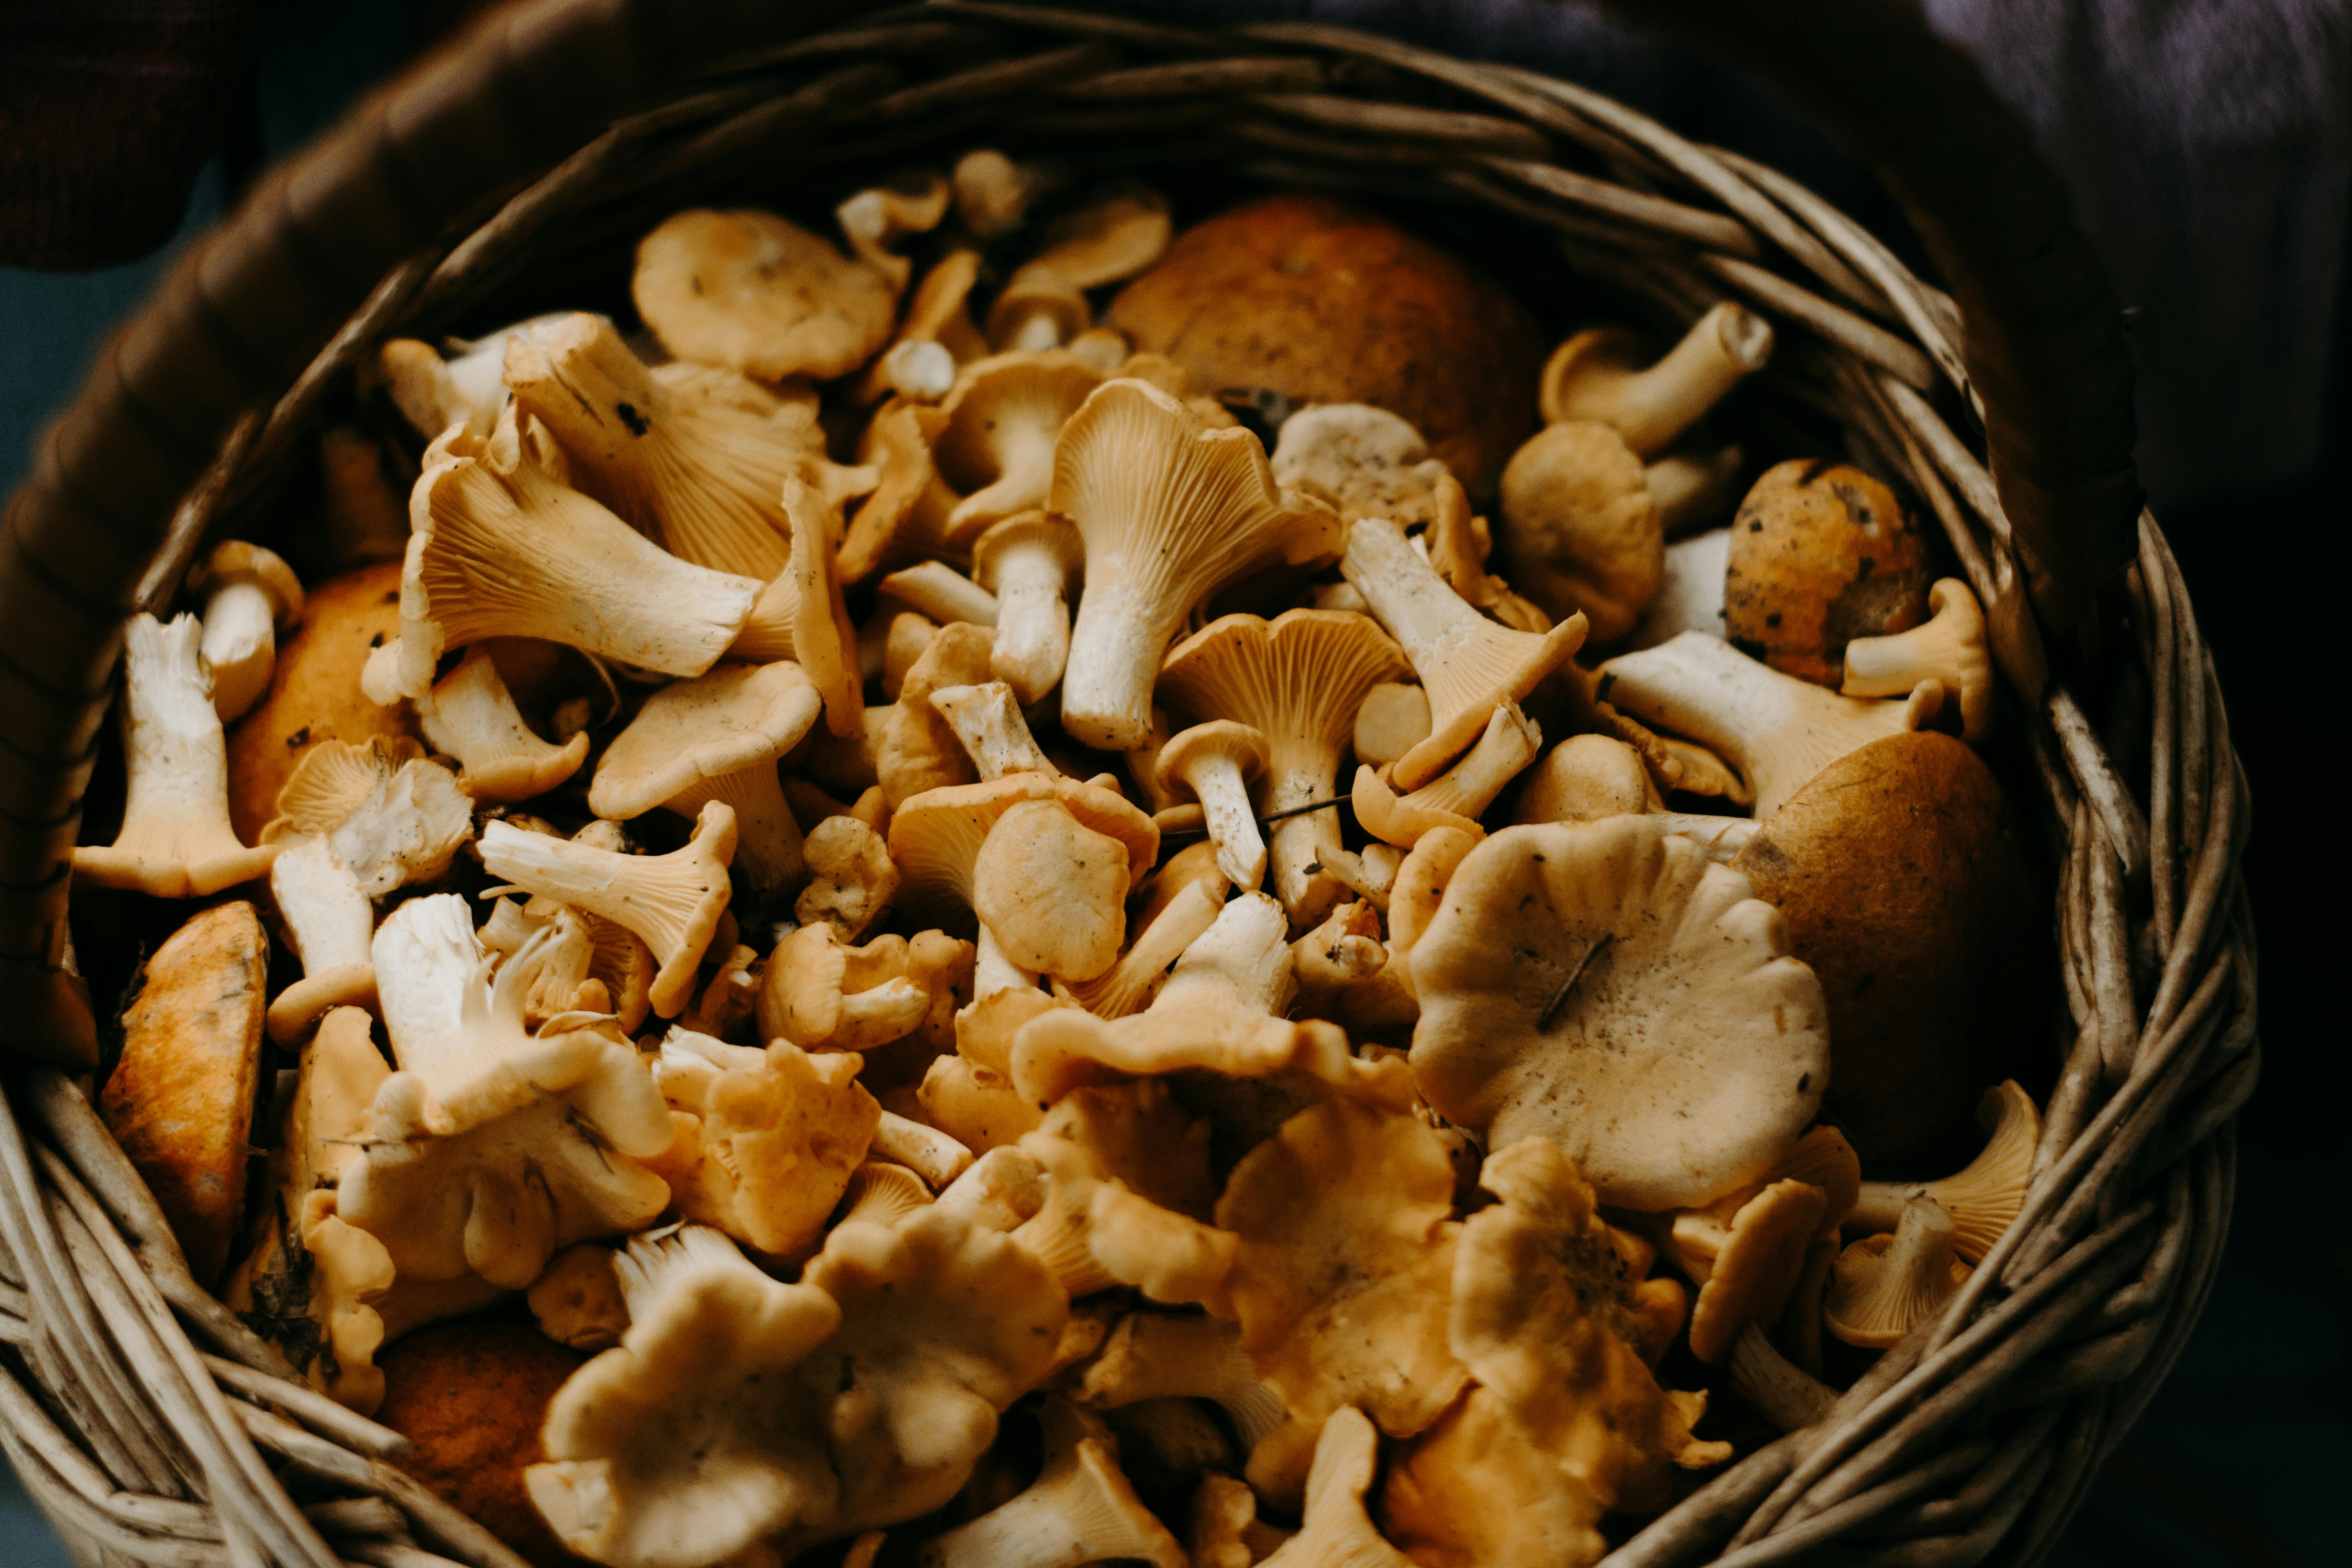 Basket of mushrooms. | Photo: Pexels